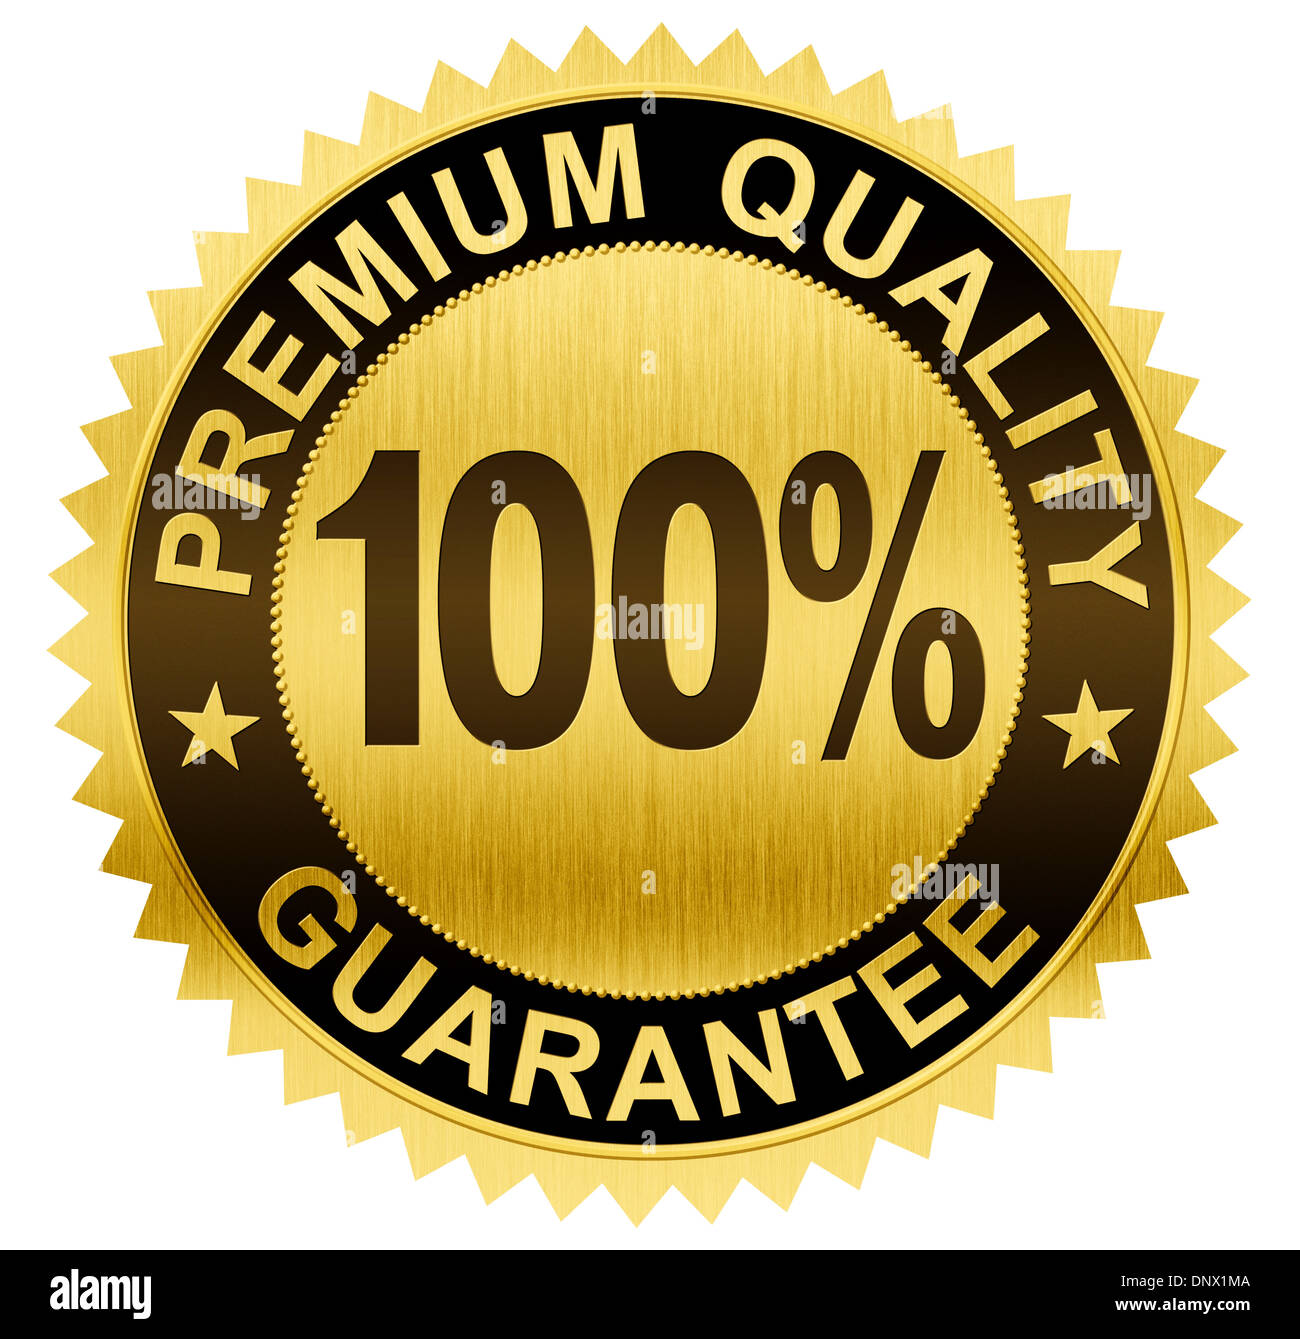 Premium-Qualität, garantierte Gold seal Medaille mit Clipping-Pfad enthalten Stockfoto